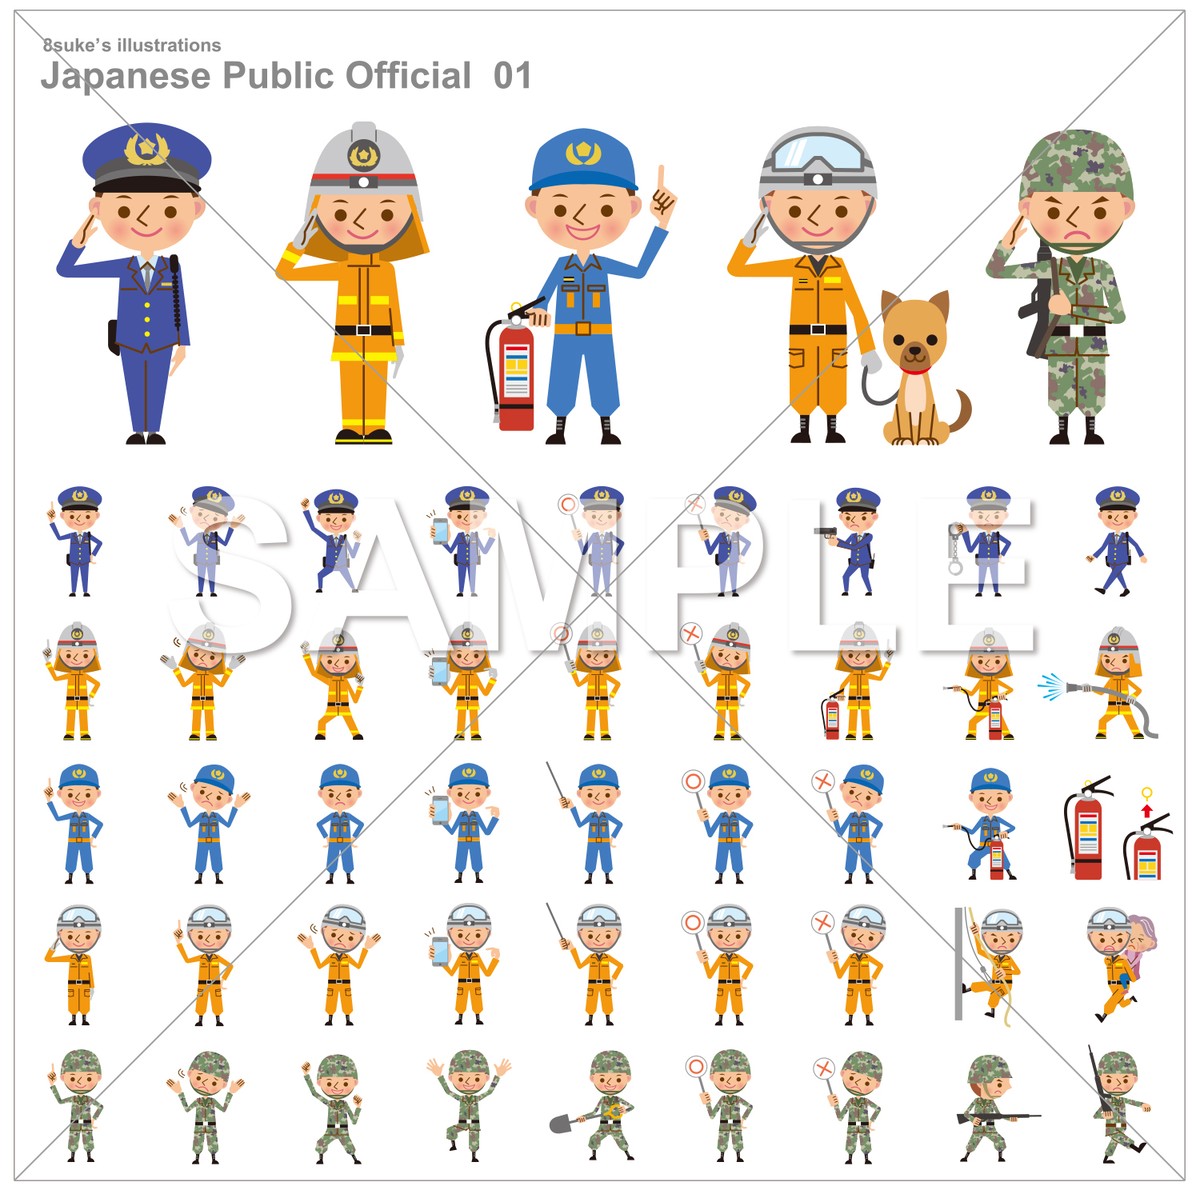 イラスト素材 警察官 消防士 自衛官のポーズセット ベクター Jpg Png Cd R版 8sukeの人物イラスト屋 かわいい ベクター素材のダウンロード販売